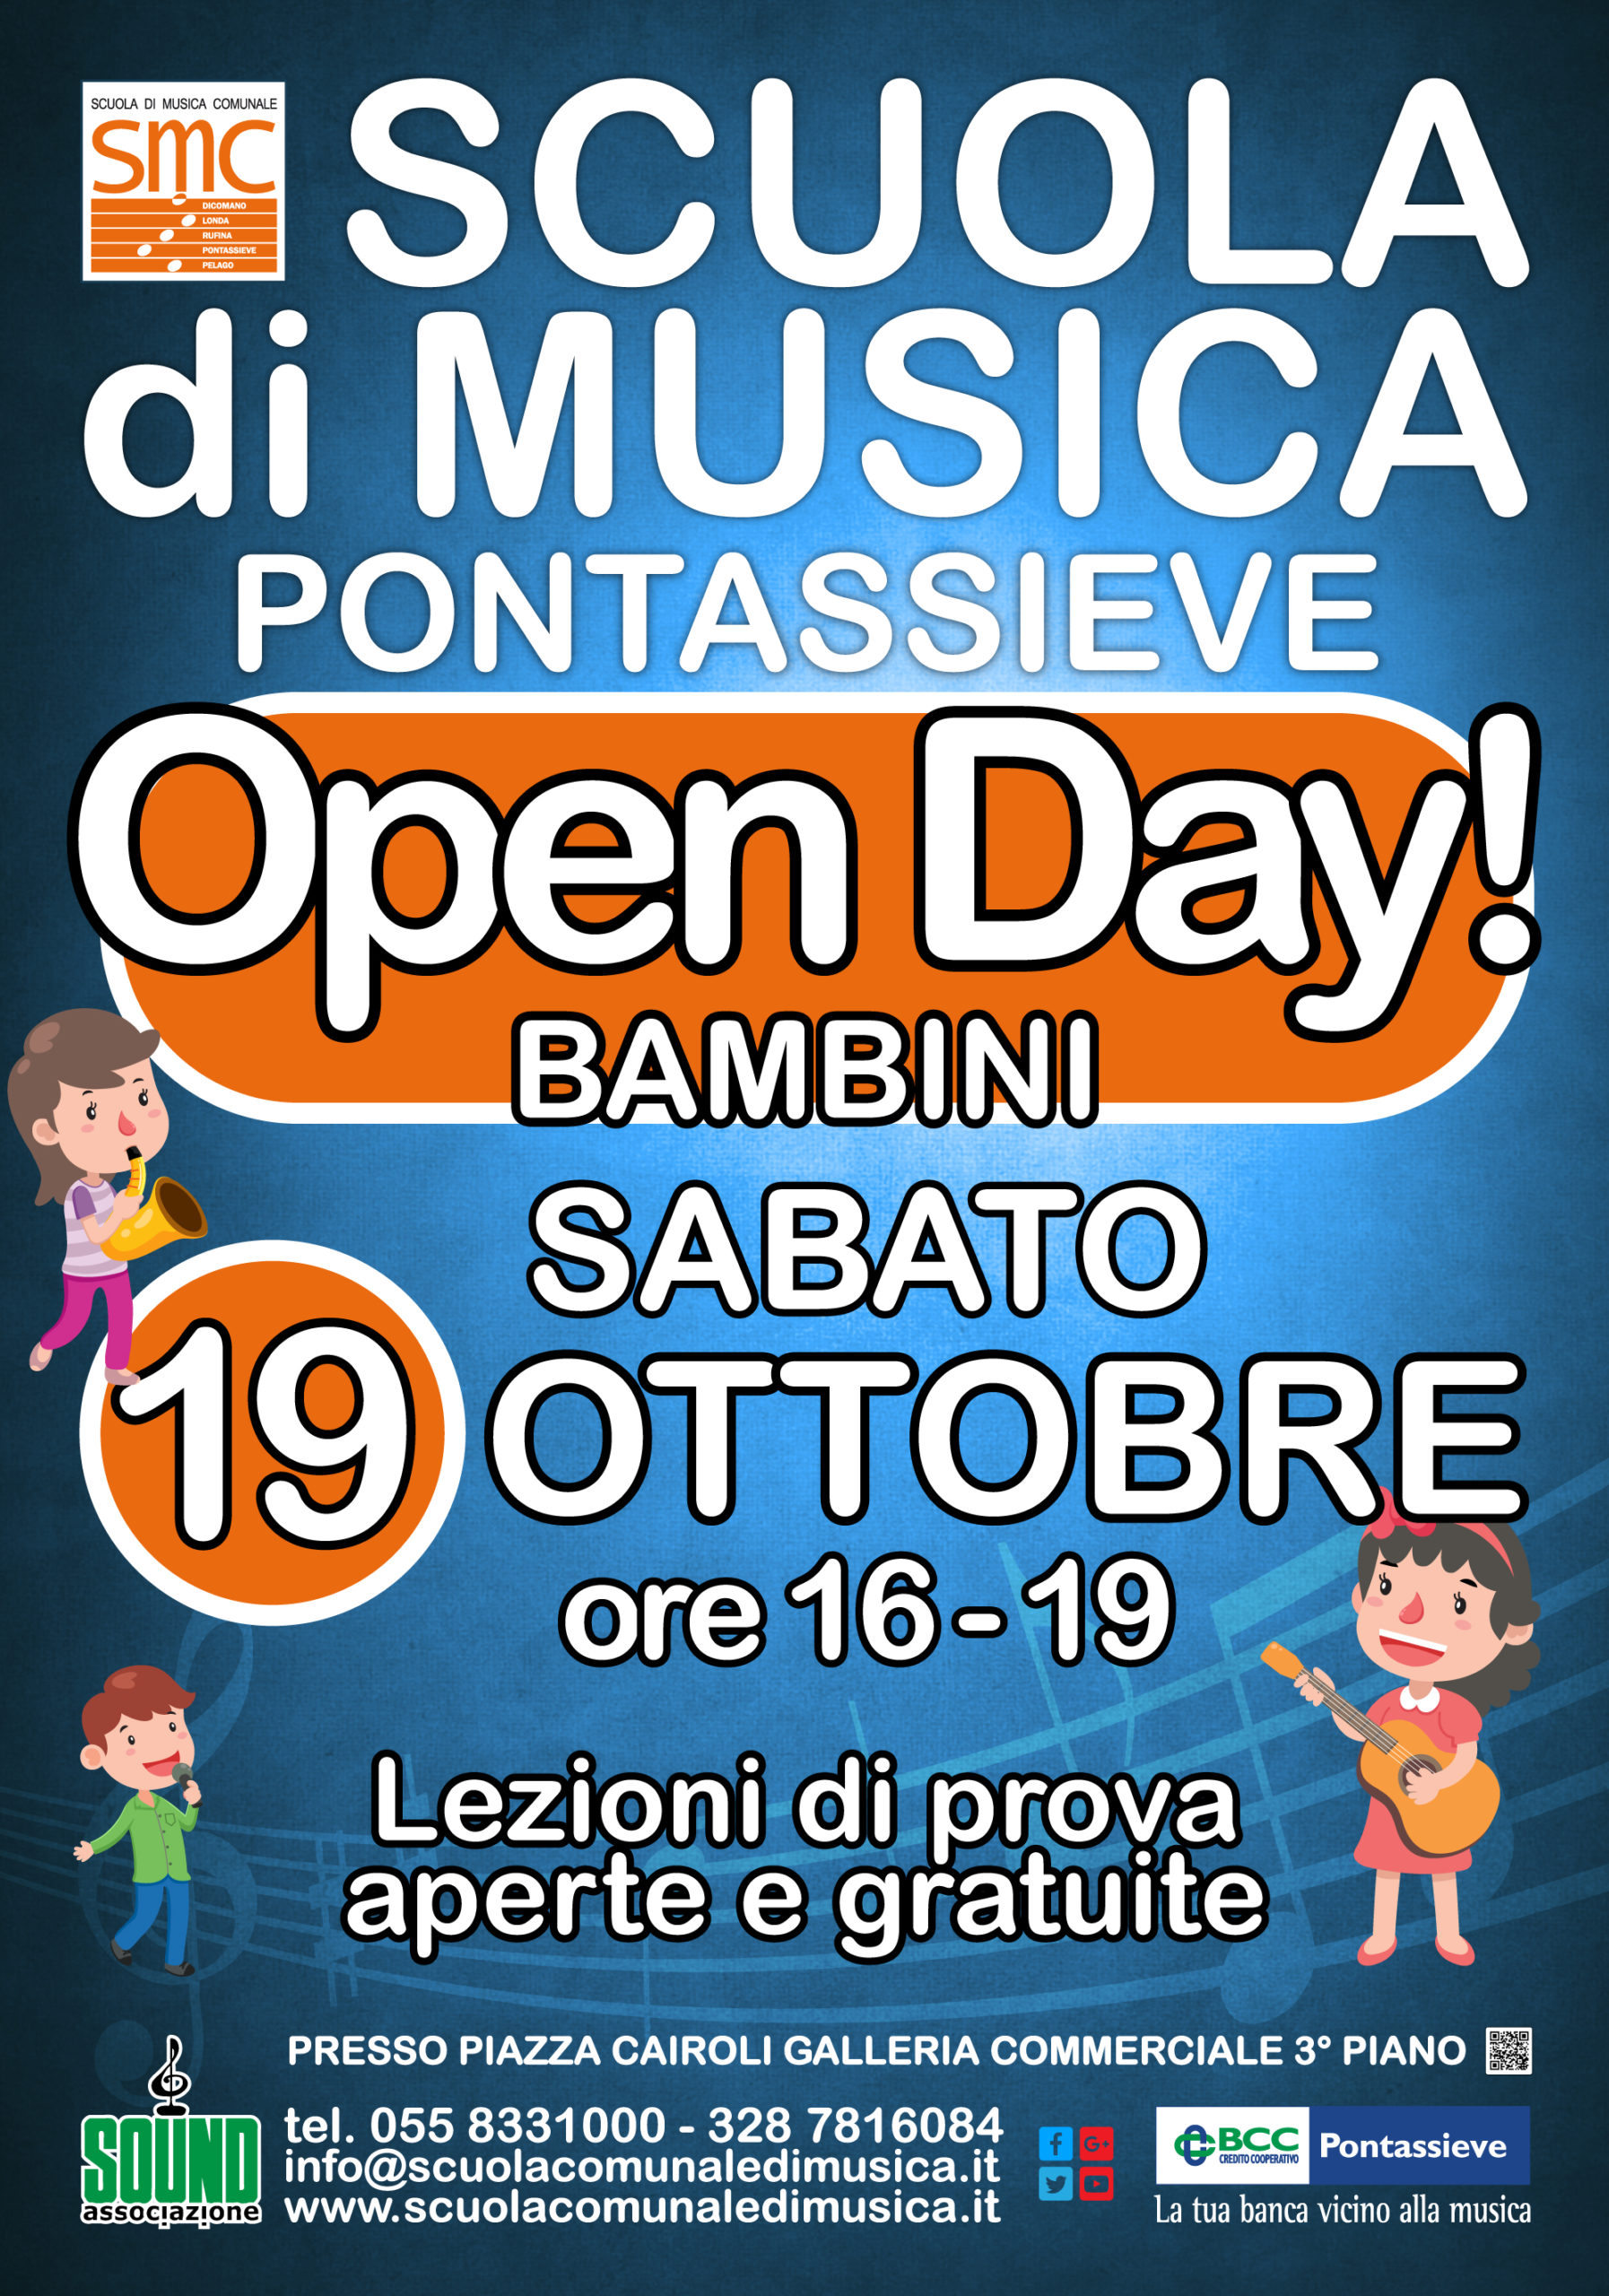 Open Day dedicato ai bambini Sabato 19 Ottobre.